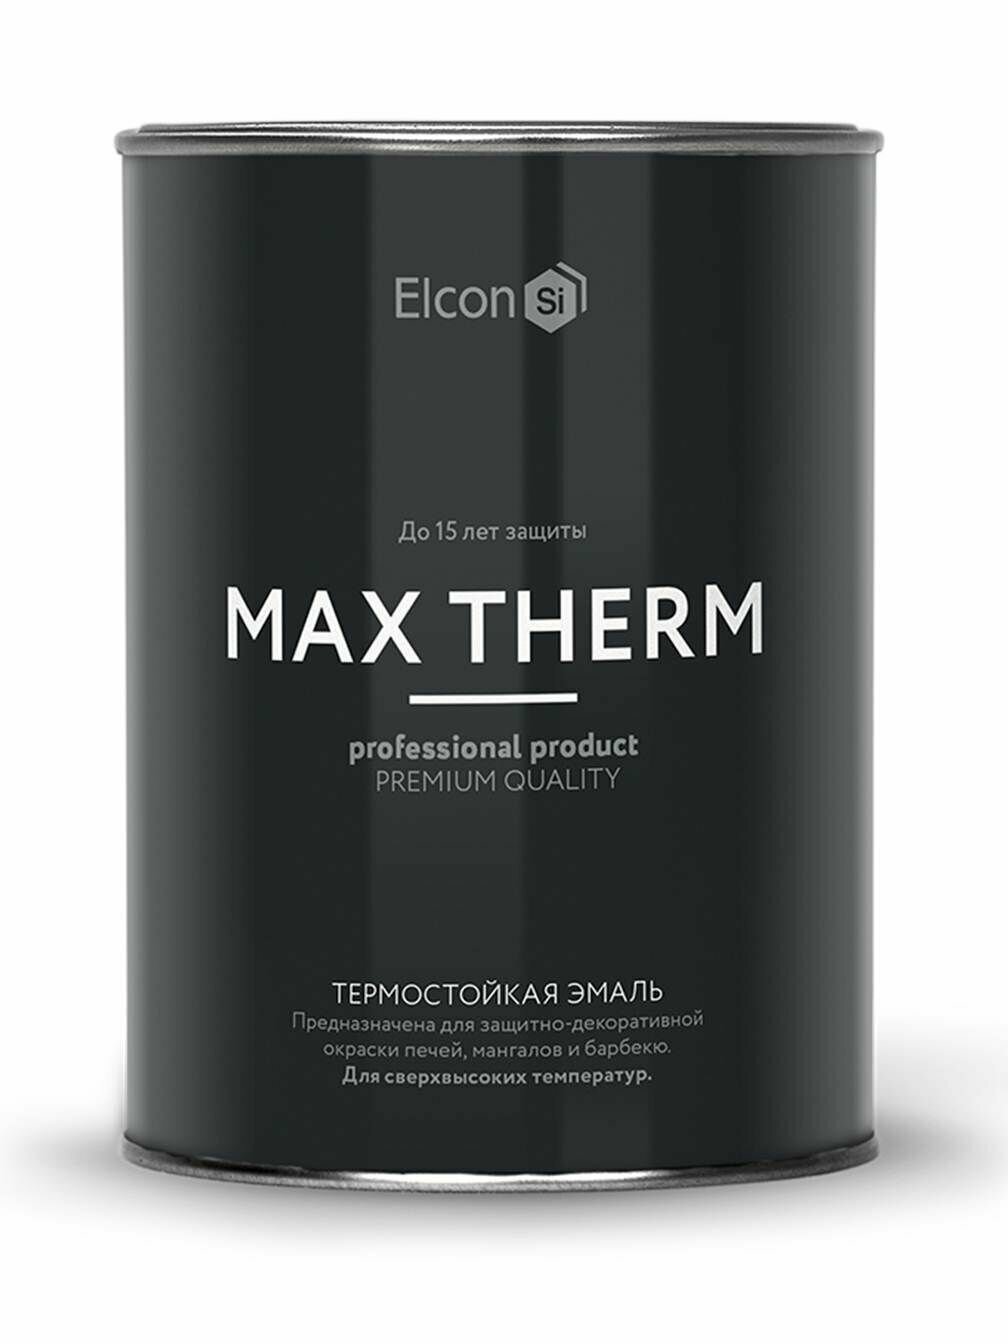 Эмаль кремнийорганическая (КО) Elcon термостойкая Max Therm до 700°C, матовая, темный шоколад, 0.4 кг - фотография № 11